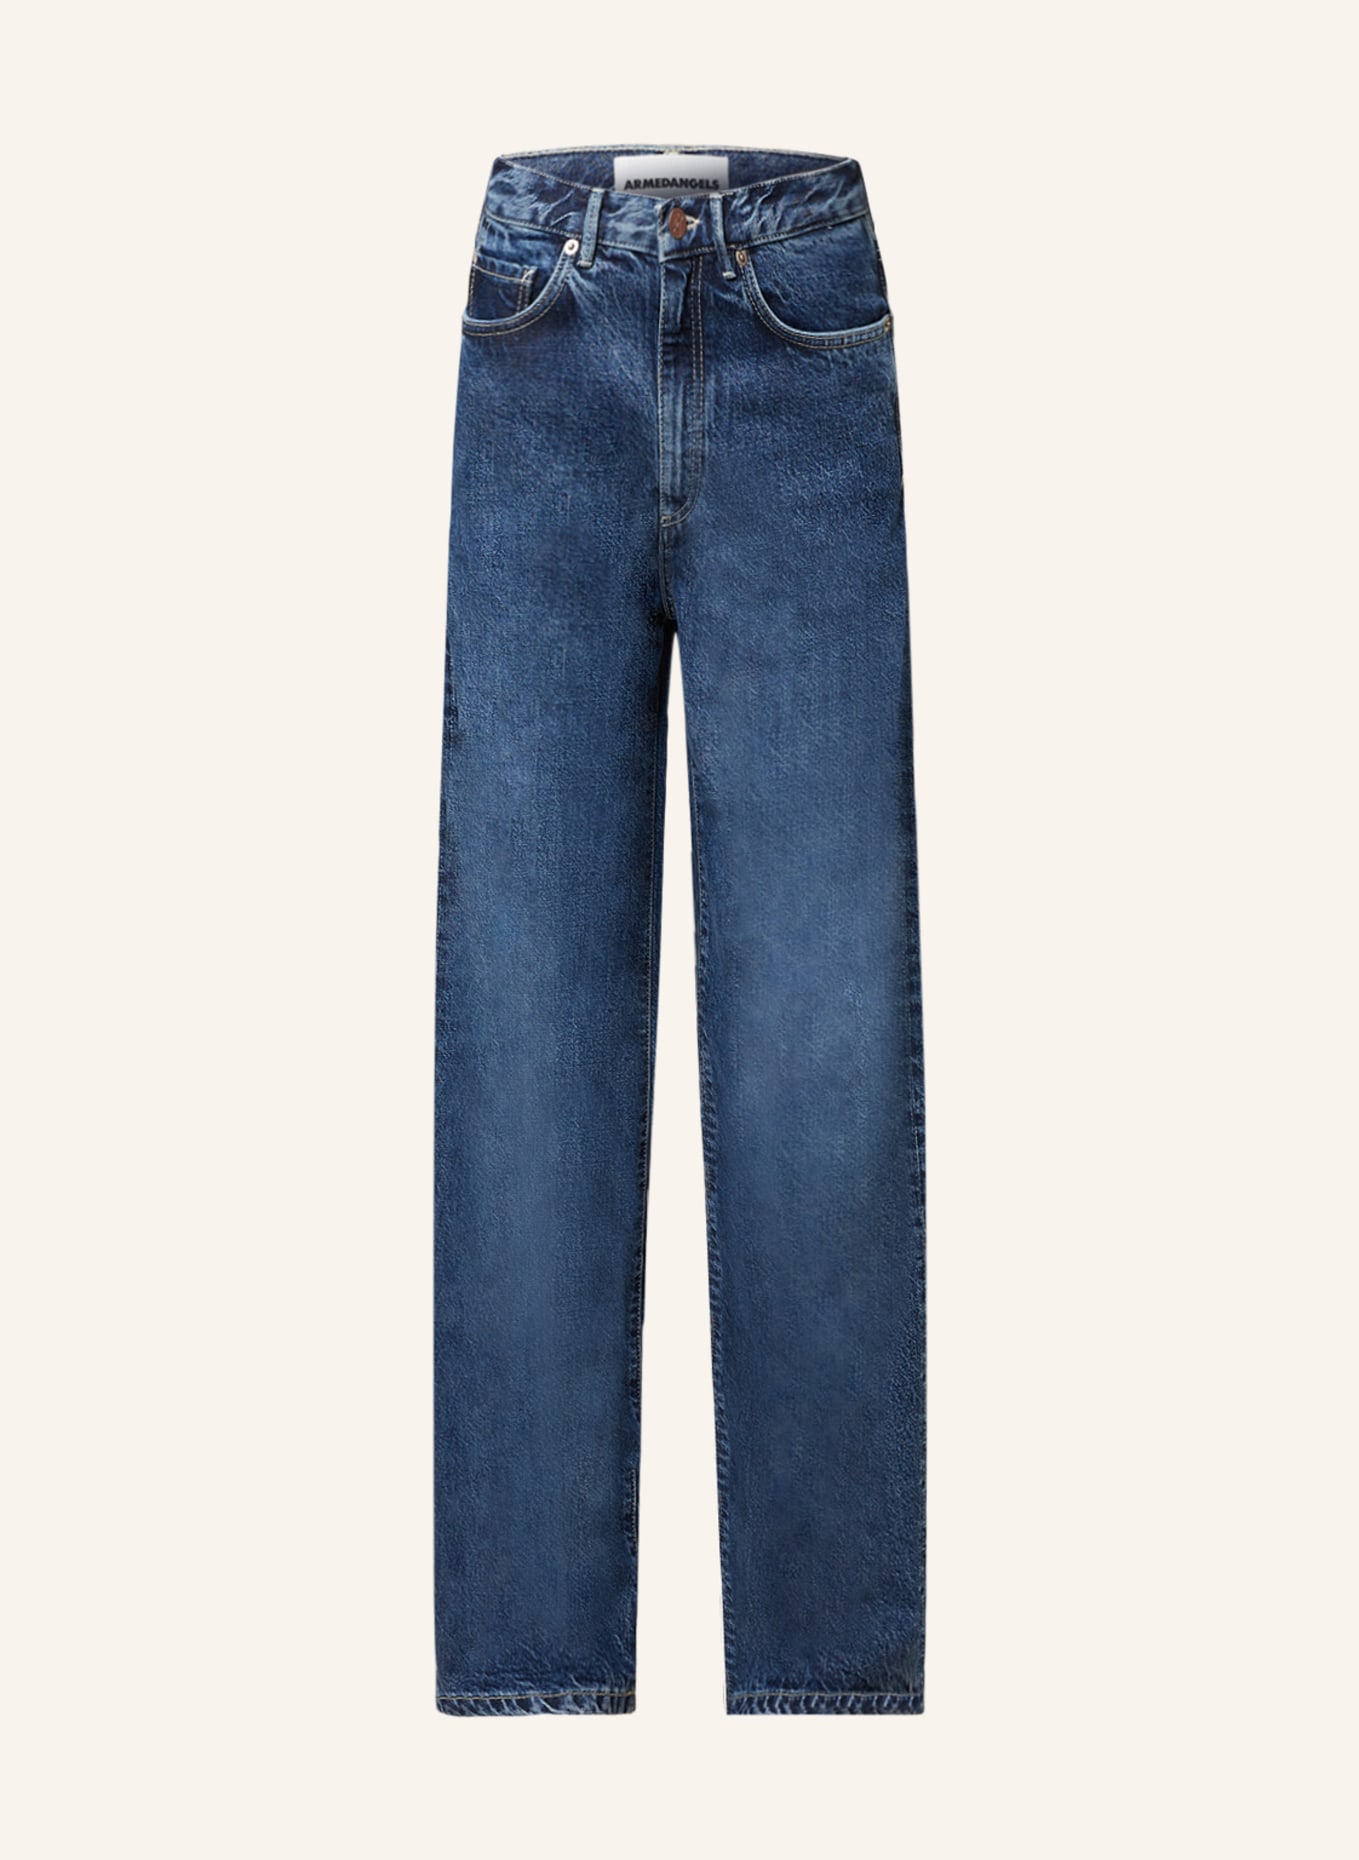 ARMEDANGELS Jeans ENIJAA FLOW Loose Fit, Farbe: 2726 mountain blast (Bild 1)